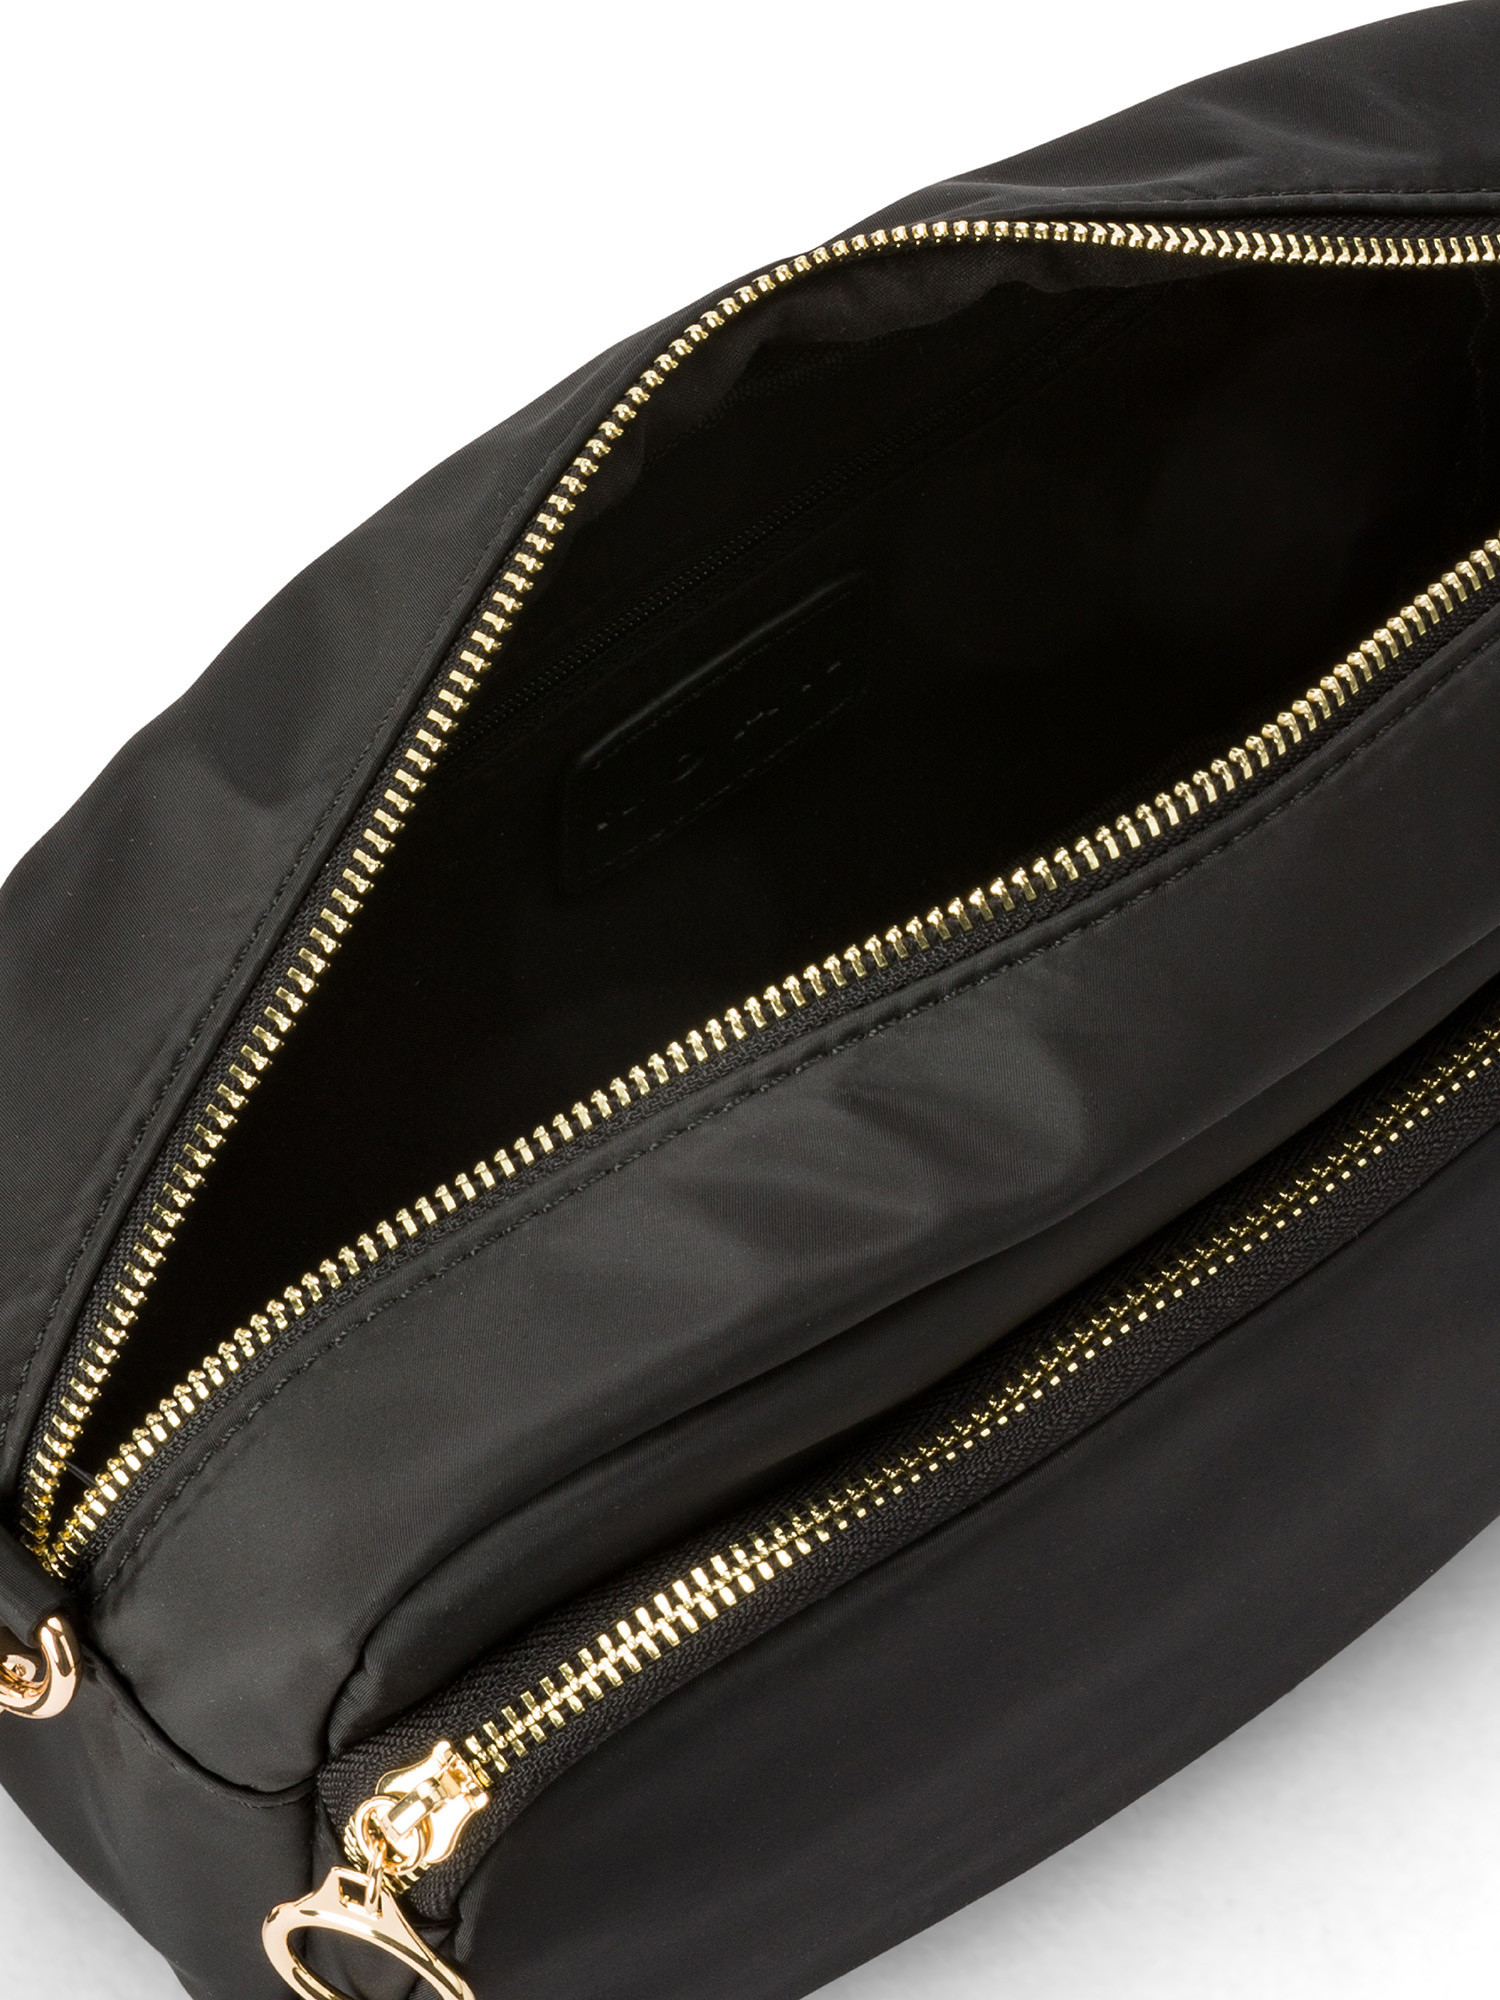 Koan - Shoulder bag, Black, large image number 2